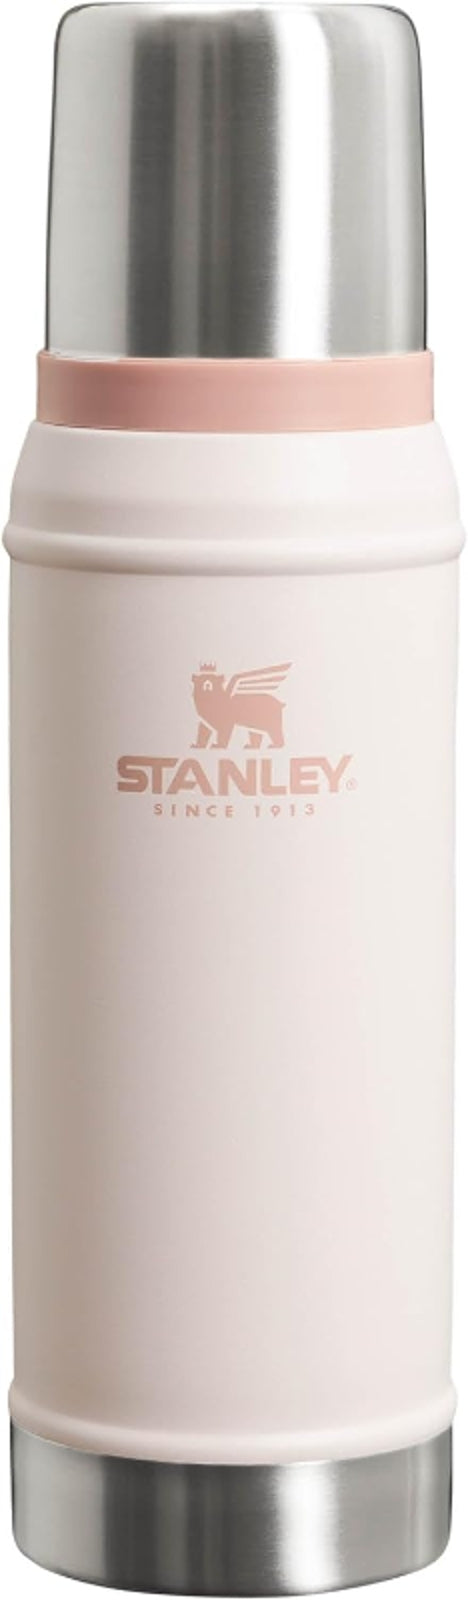 Stanley Classic Bottle 25oz .75L